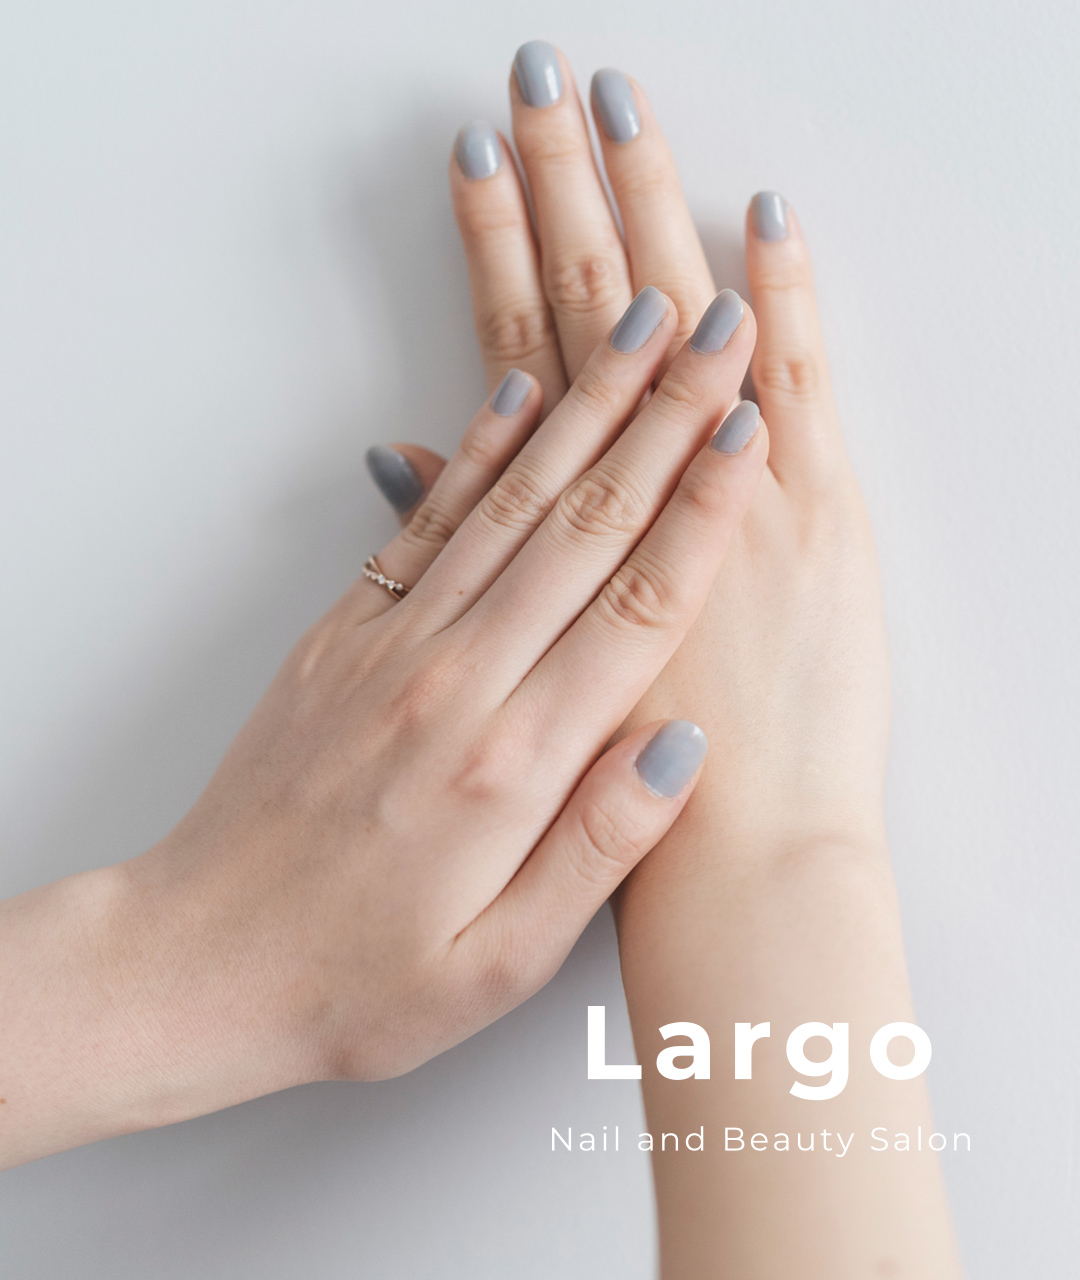 Nail and Beauty Salon Largo